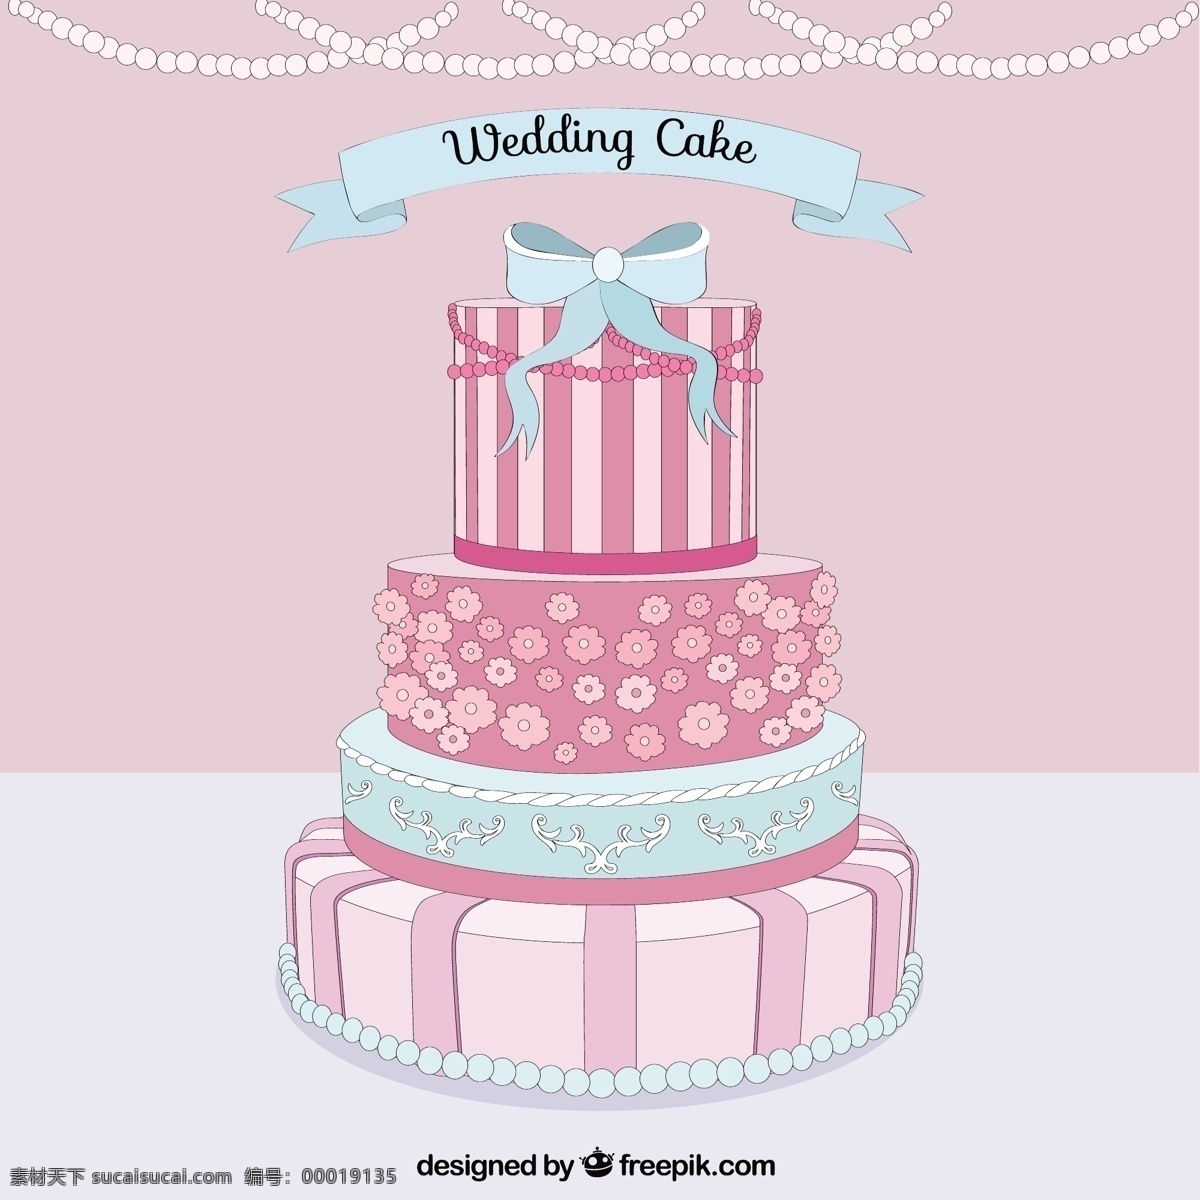 美味 婚礼 蛋糕 食物 爱情 蓝色 粉色 庆祝 甜蜜 浪漫 订婚 婚礼蛋糕 仪式